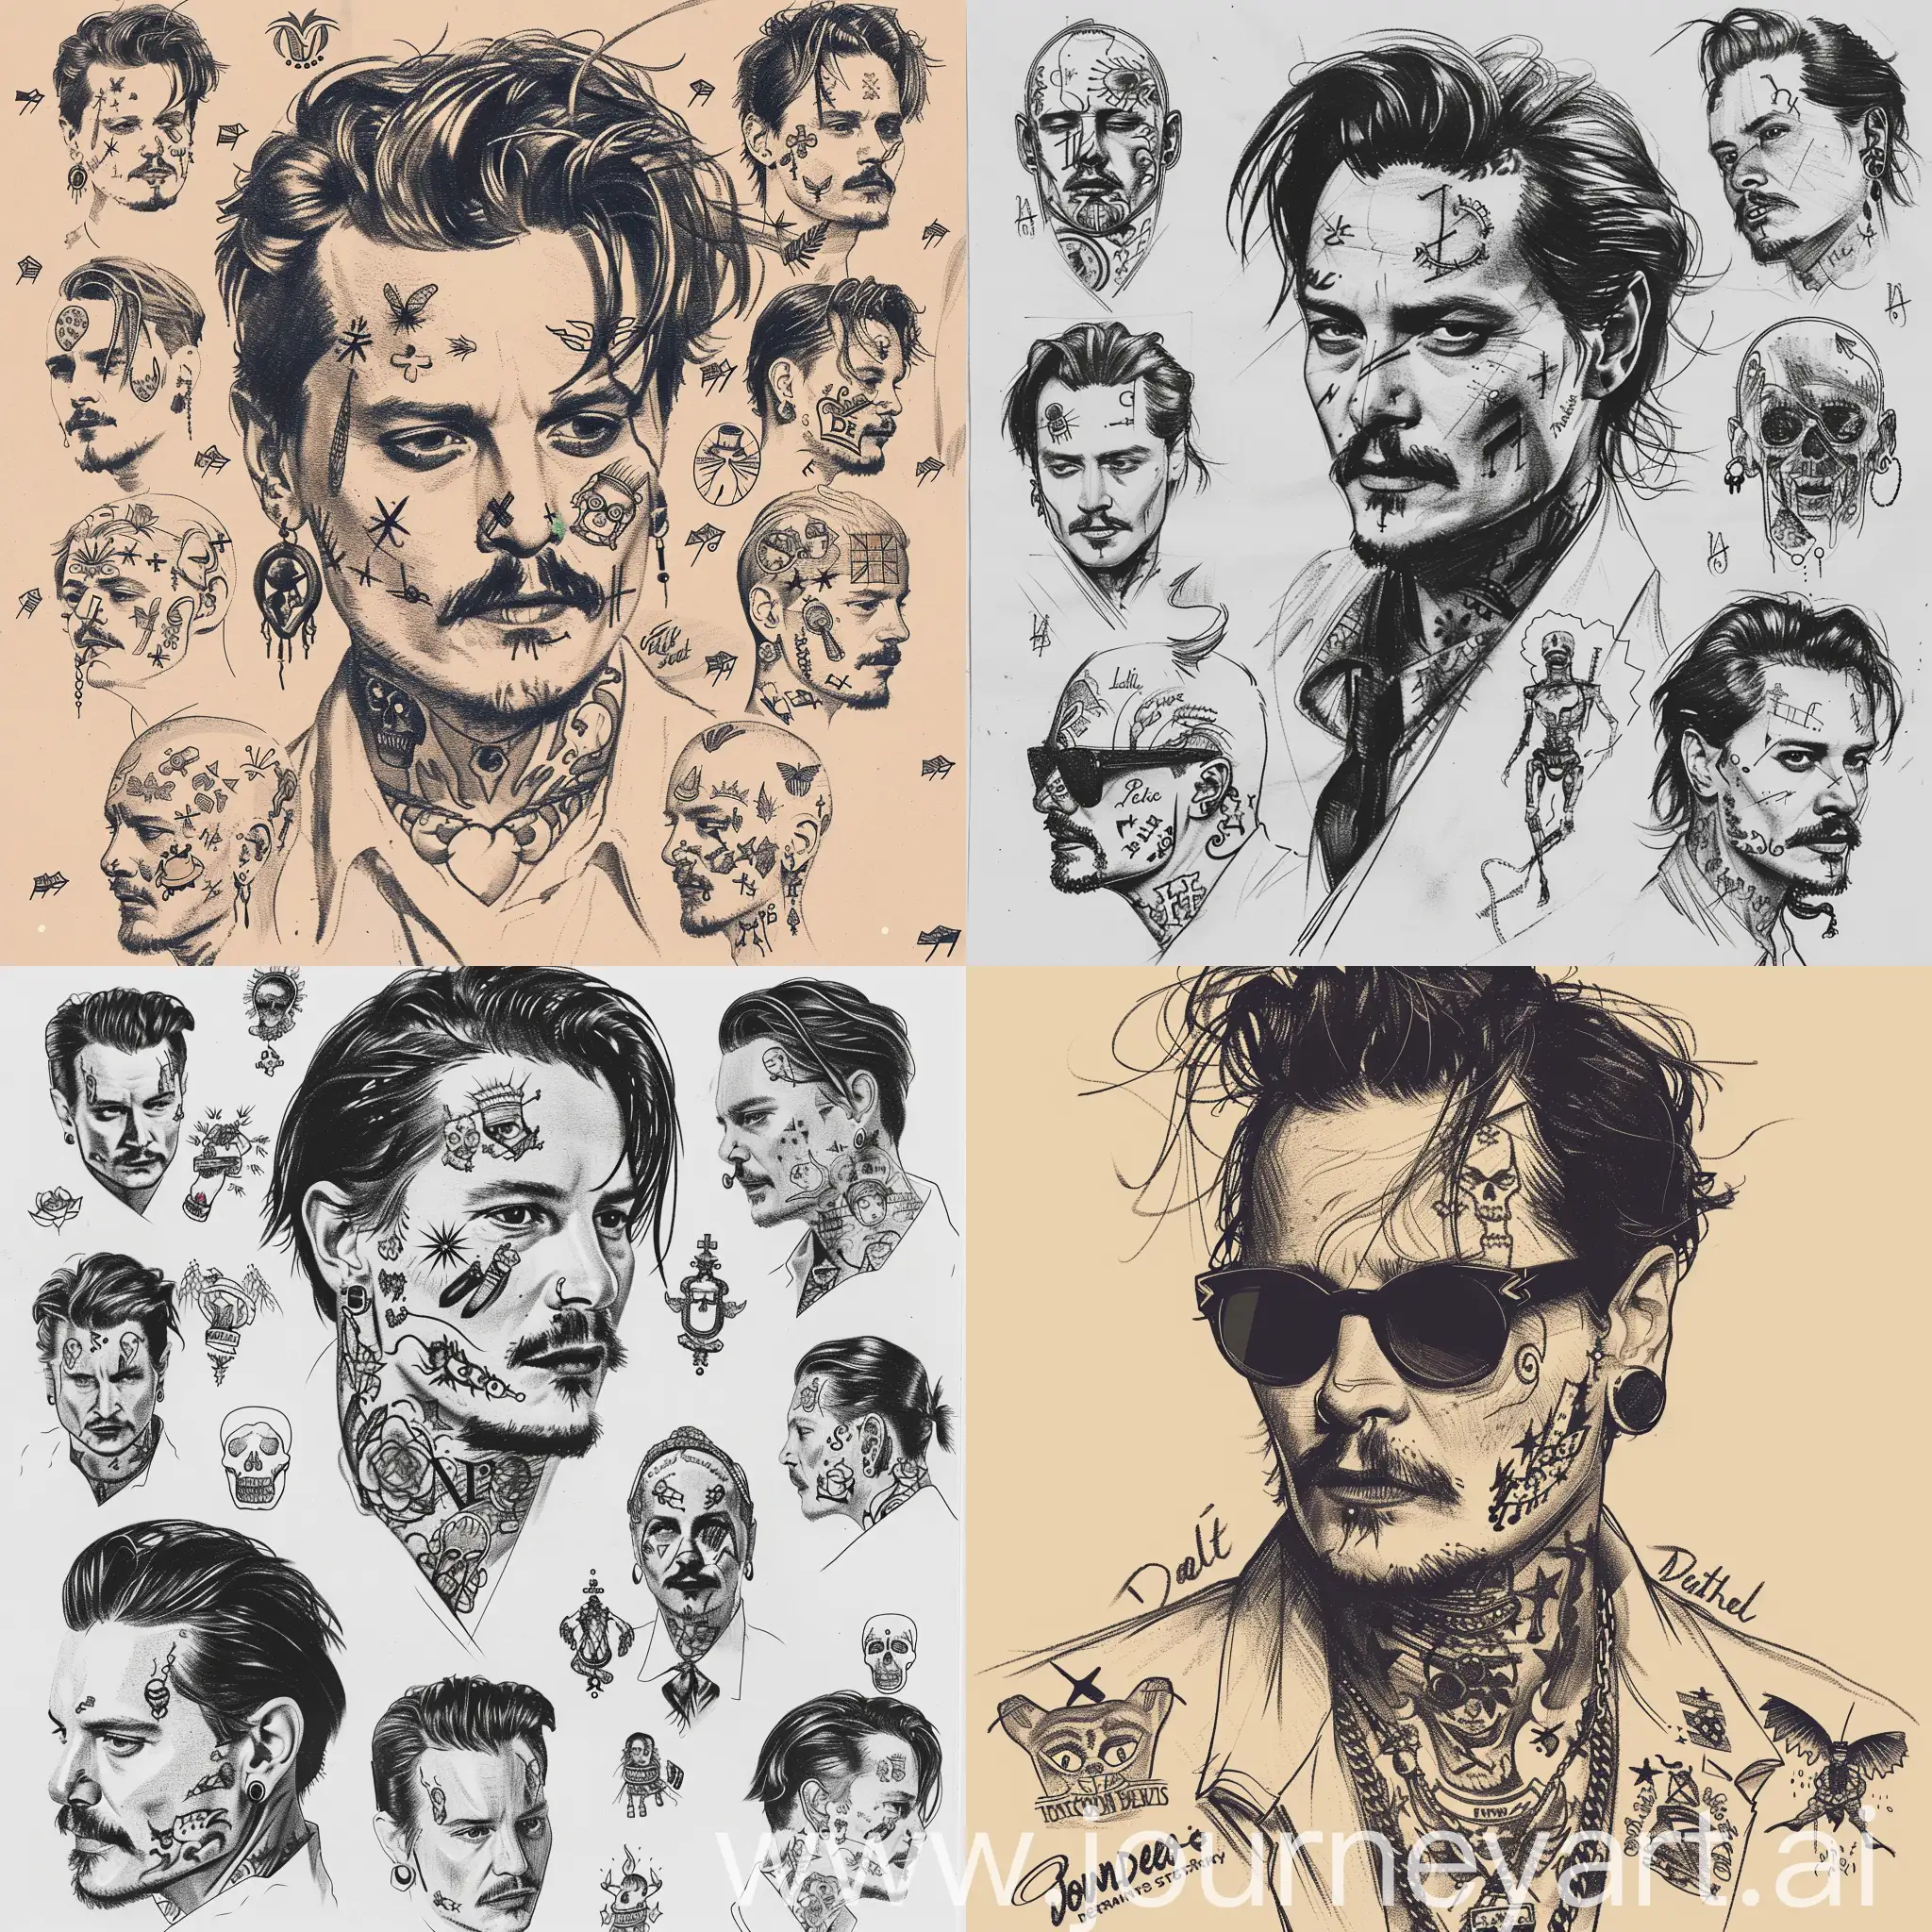 Изучи все татуировки Джонни Деппа, и нарисуй несколько эскизов в похожем стиле